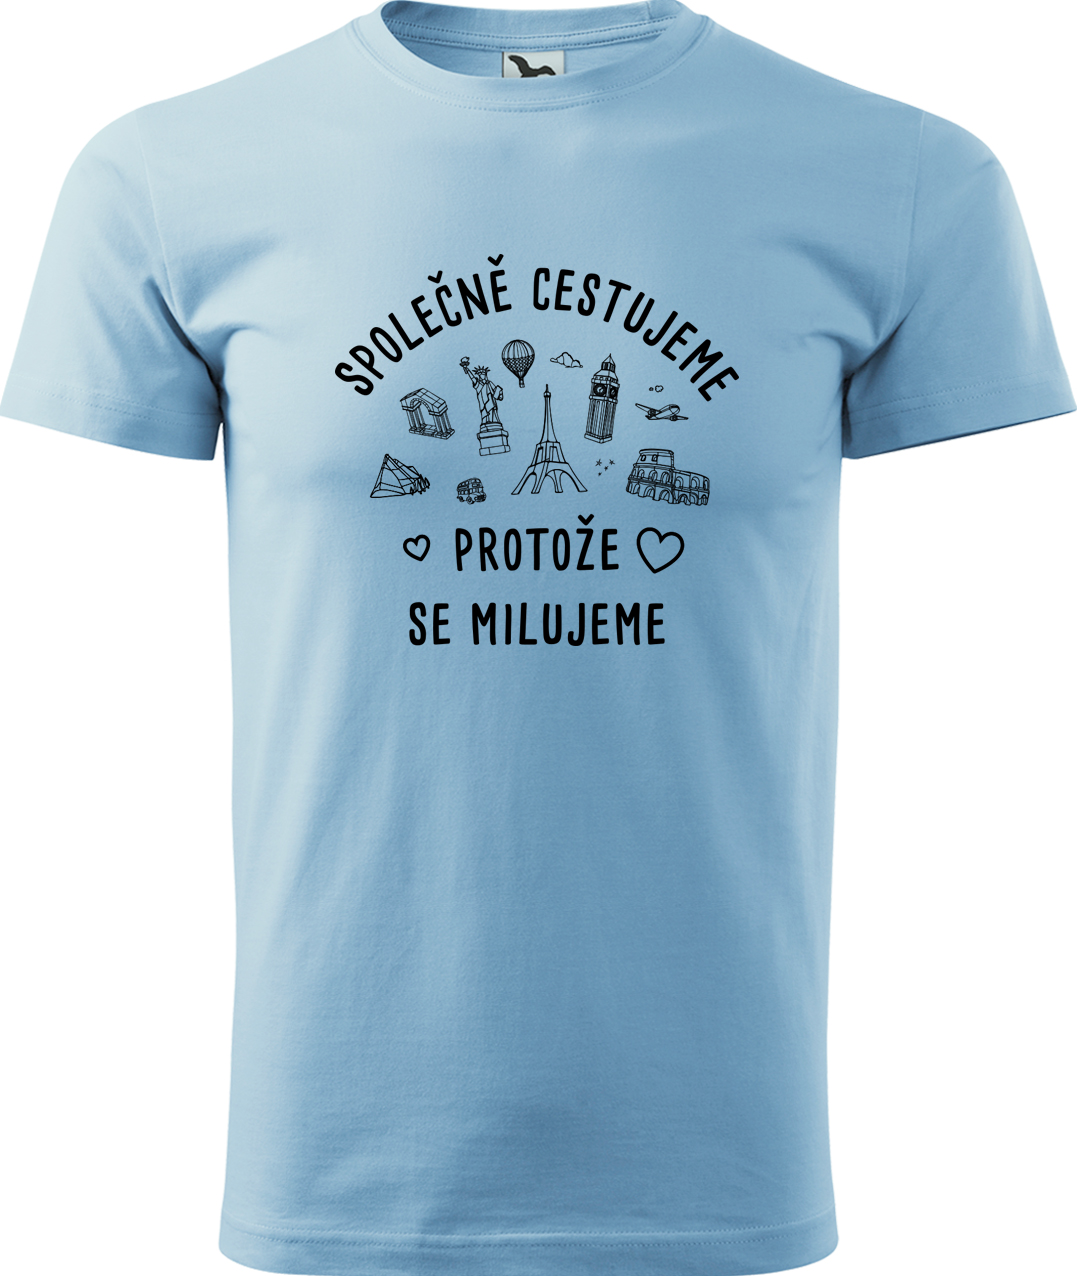 Pánské cestovatelské tričko - Společně cestujeme protože se milujeme Velikost: S, Barva: Nebesky modrá (15), Střih: pánský